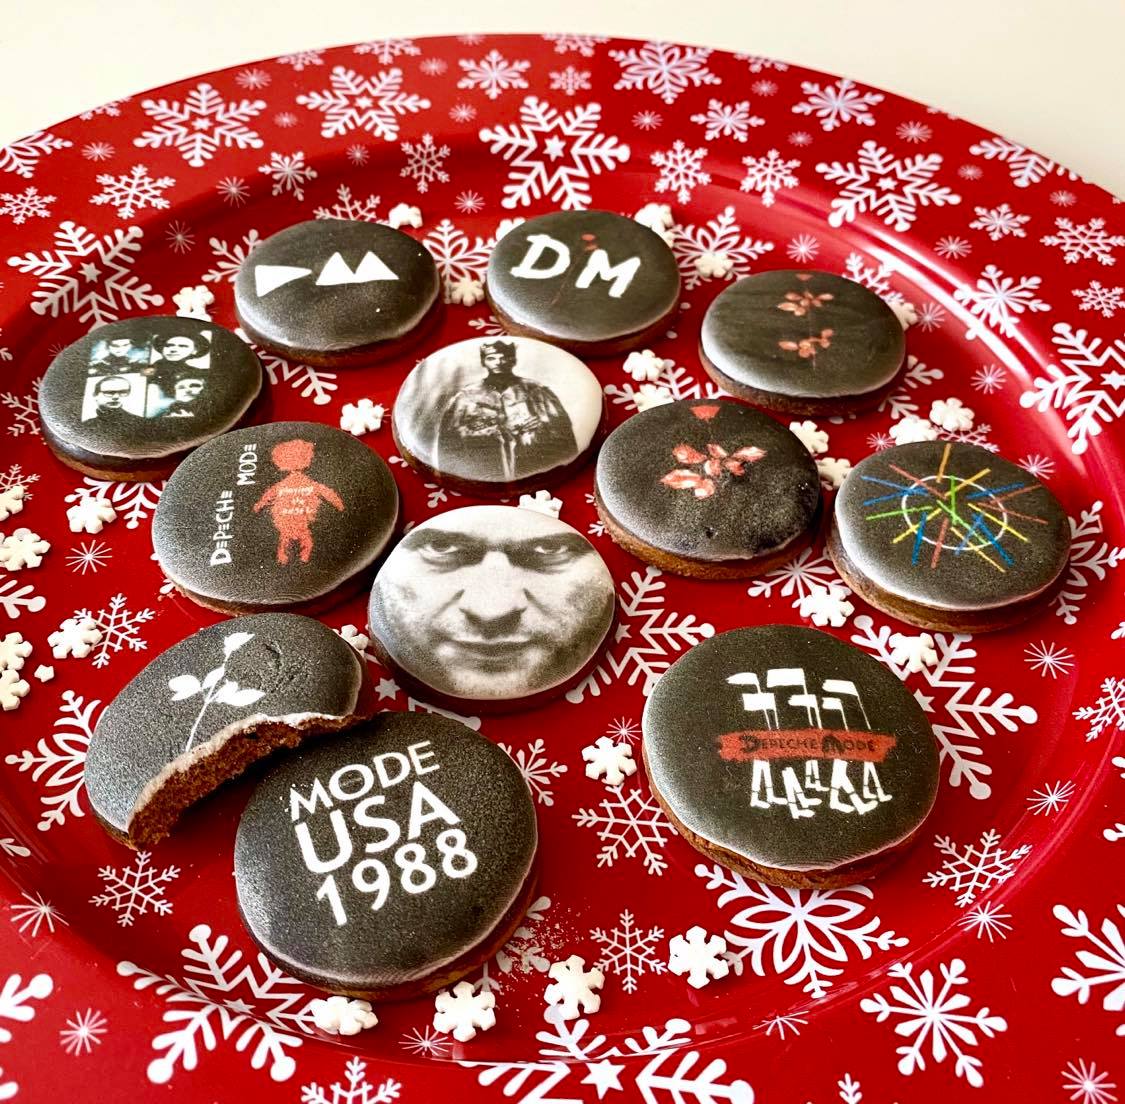 Depeche Mode Christmas gingerbread